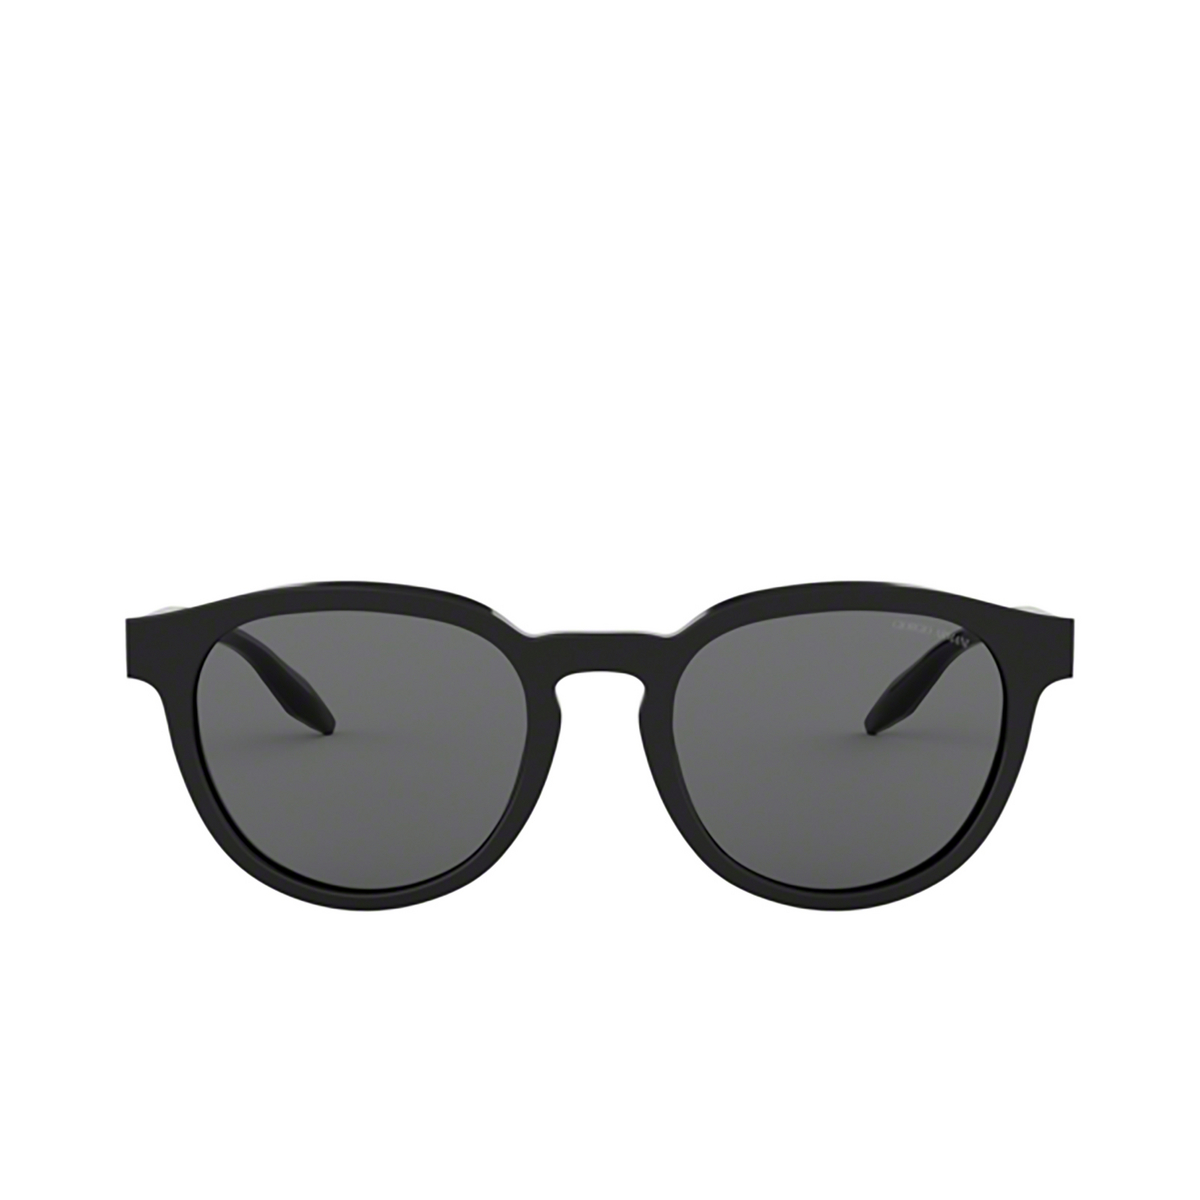 Giorgio Armani AR8115 Sunglasses 500187 - front view